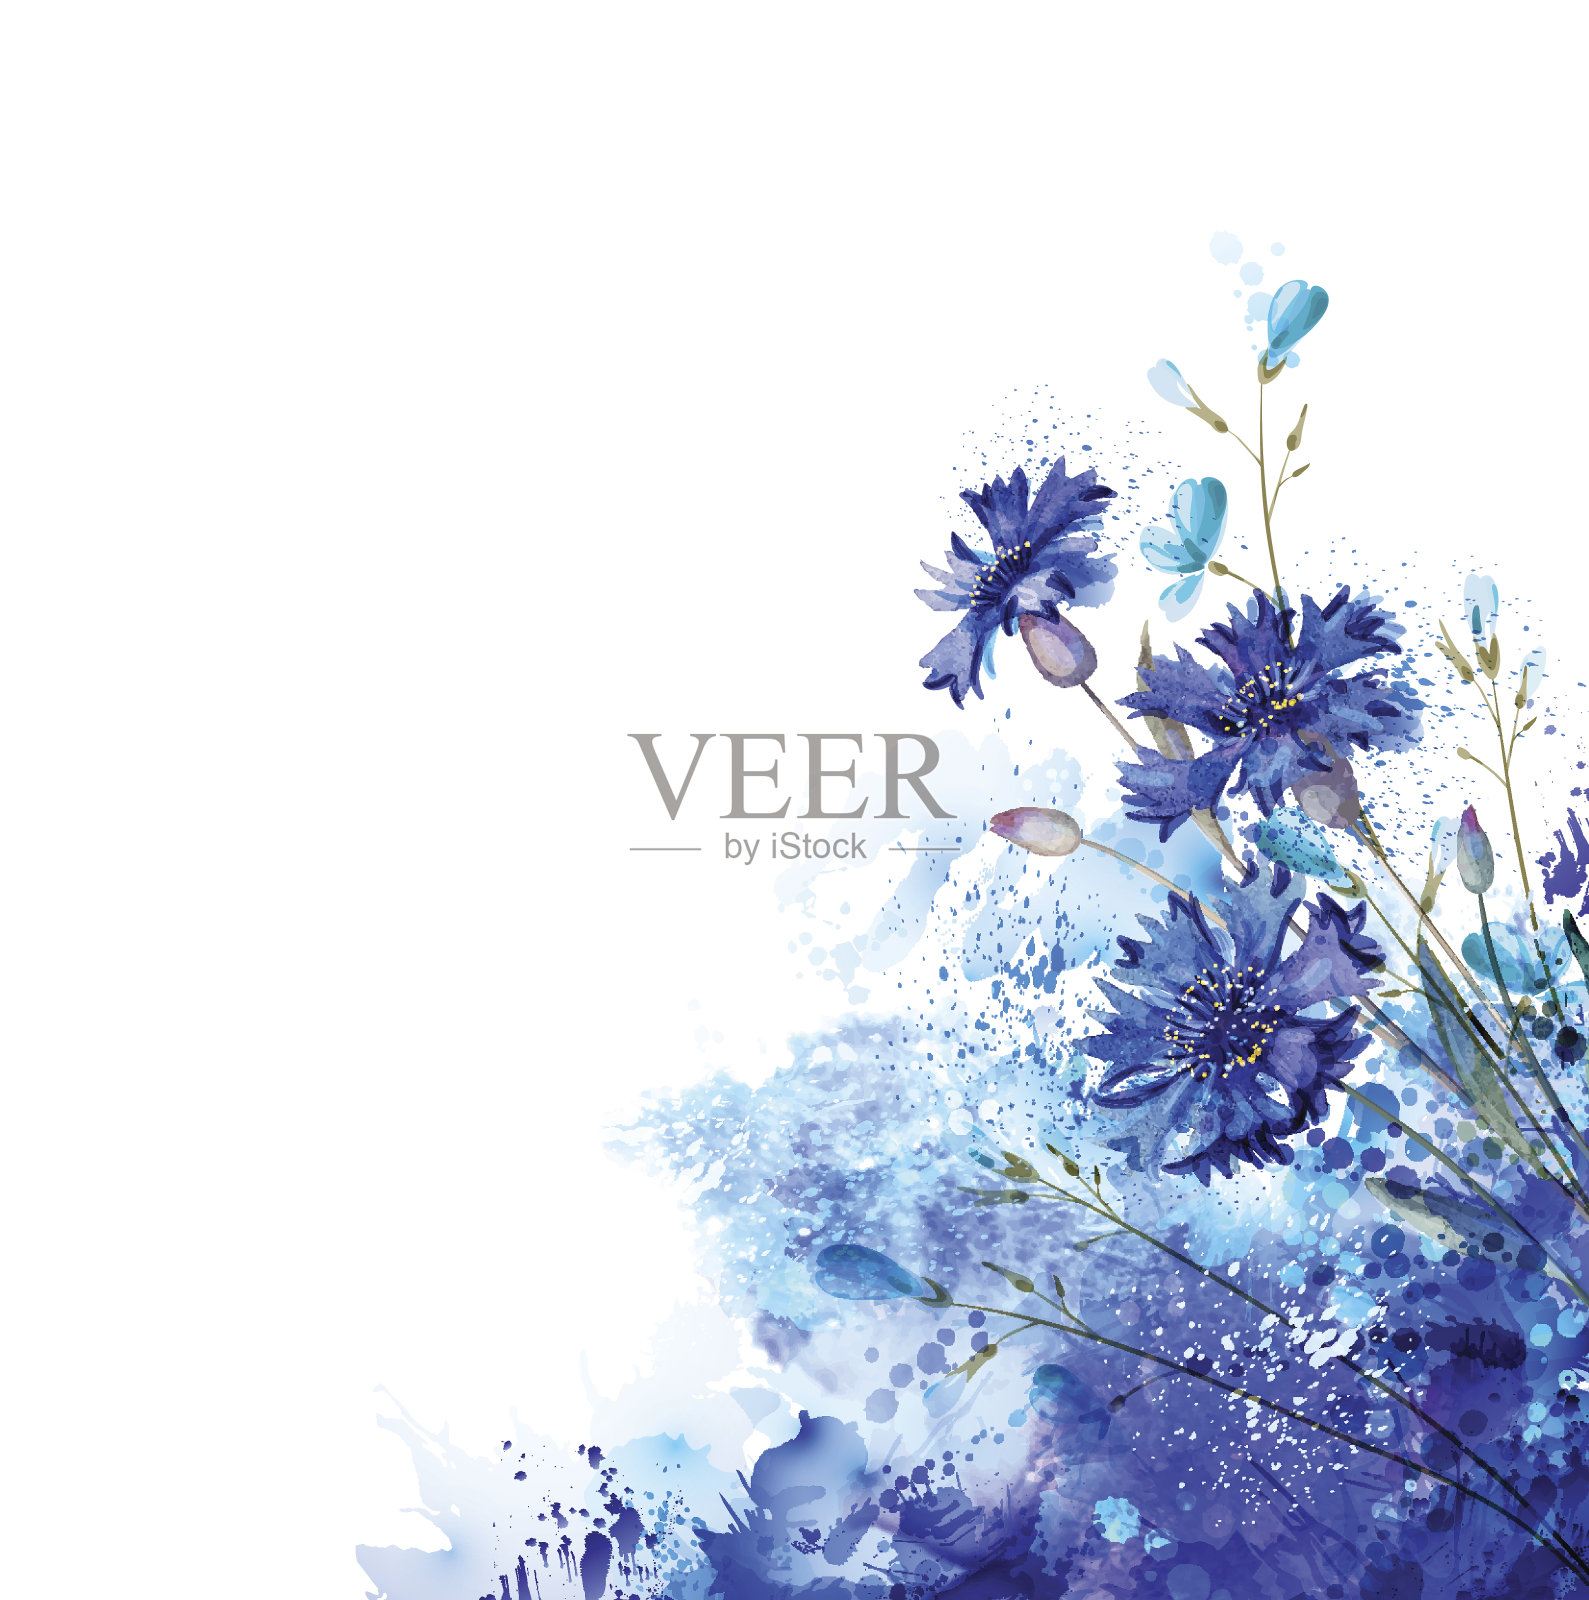 蓝色矢车菊的抽象元素插画图片素材